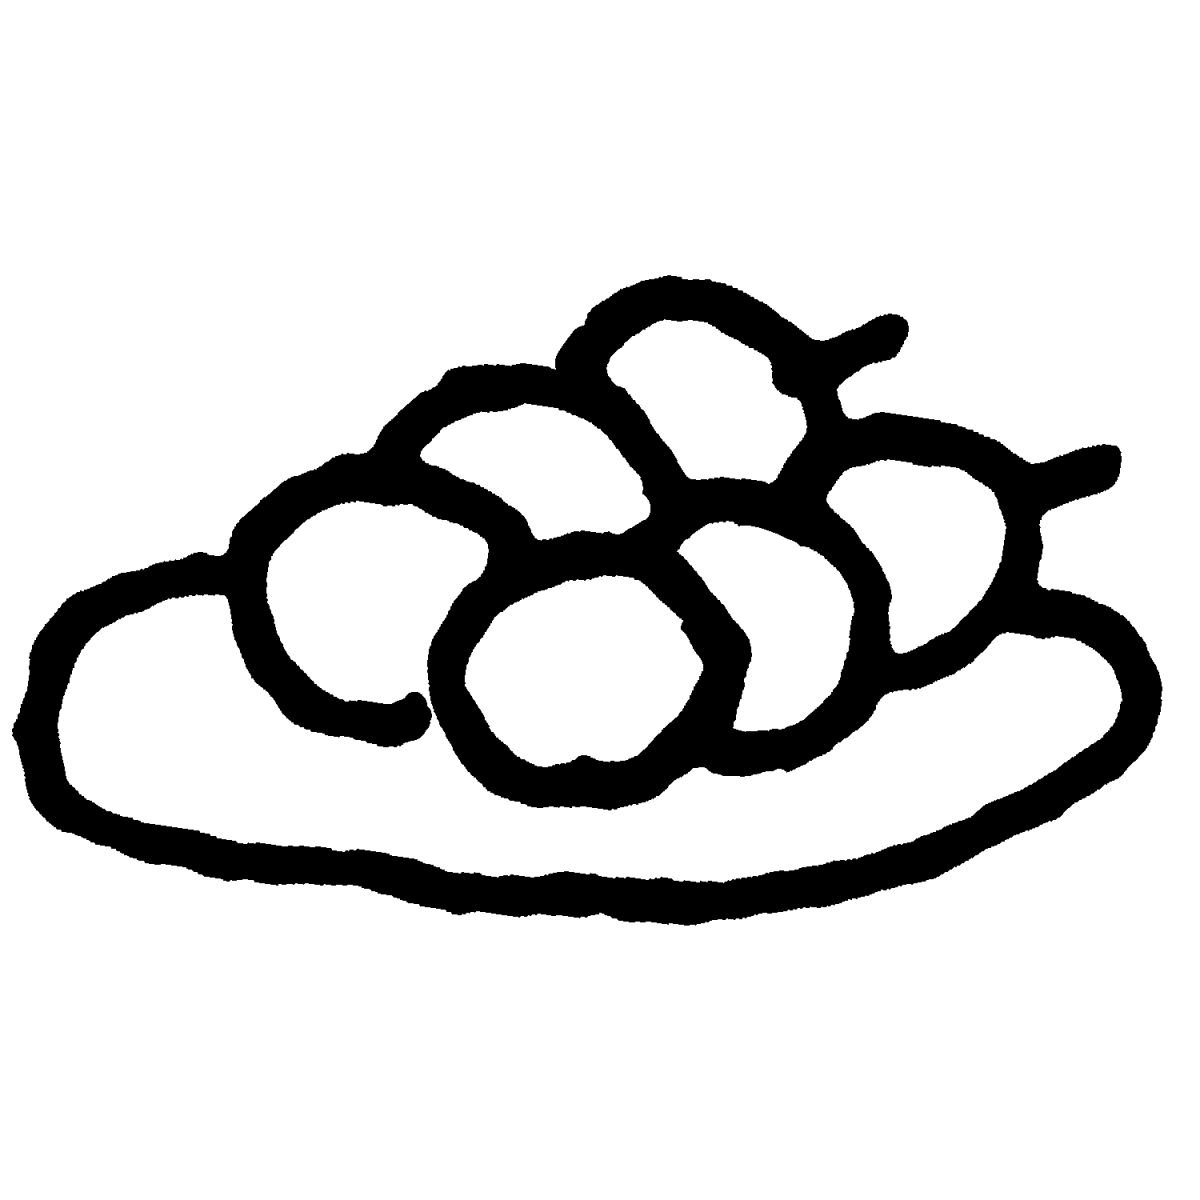 お皿の団子のイラスト / Dumplings on a plate Illustration